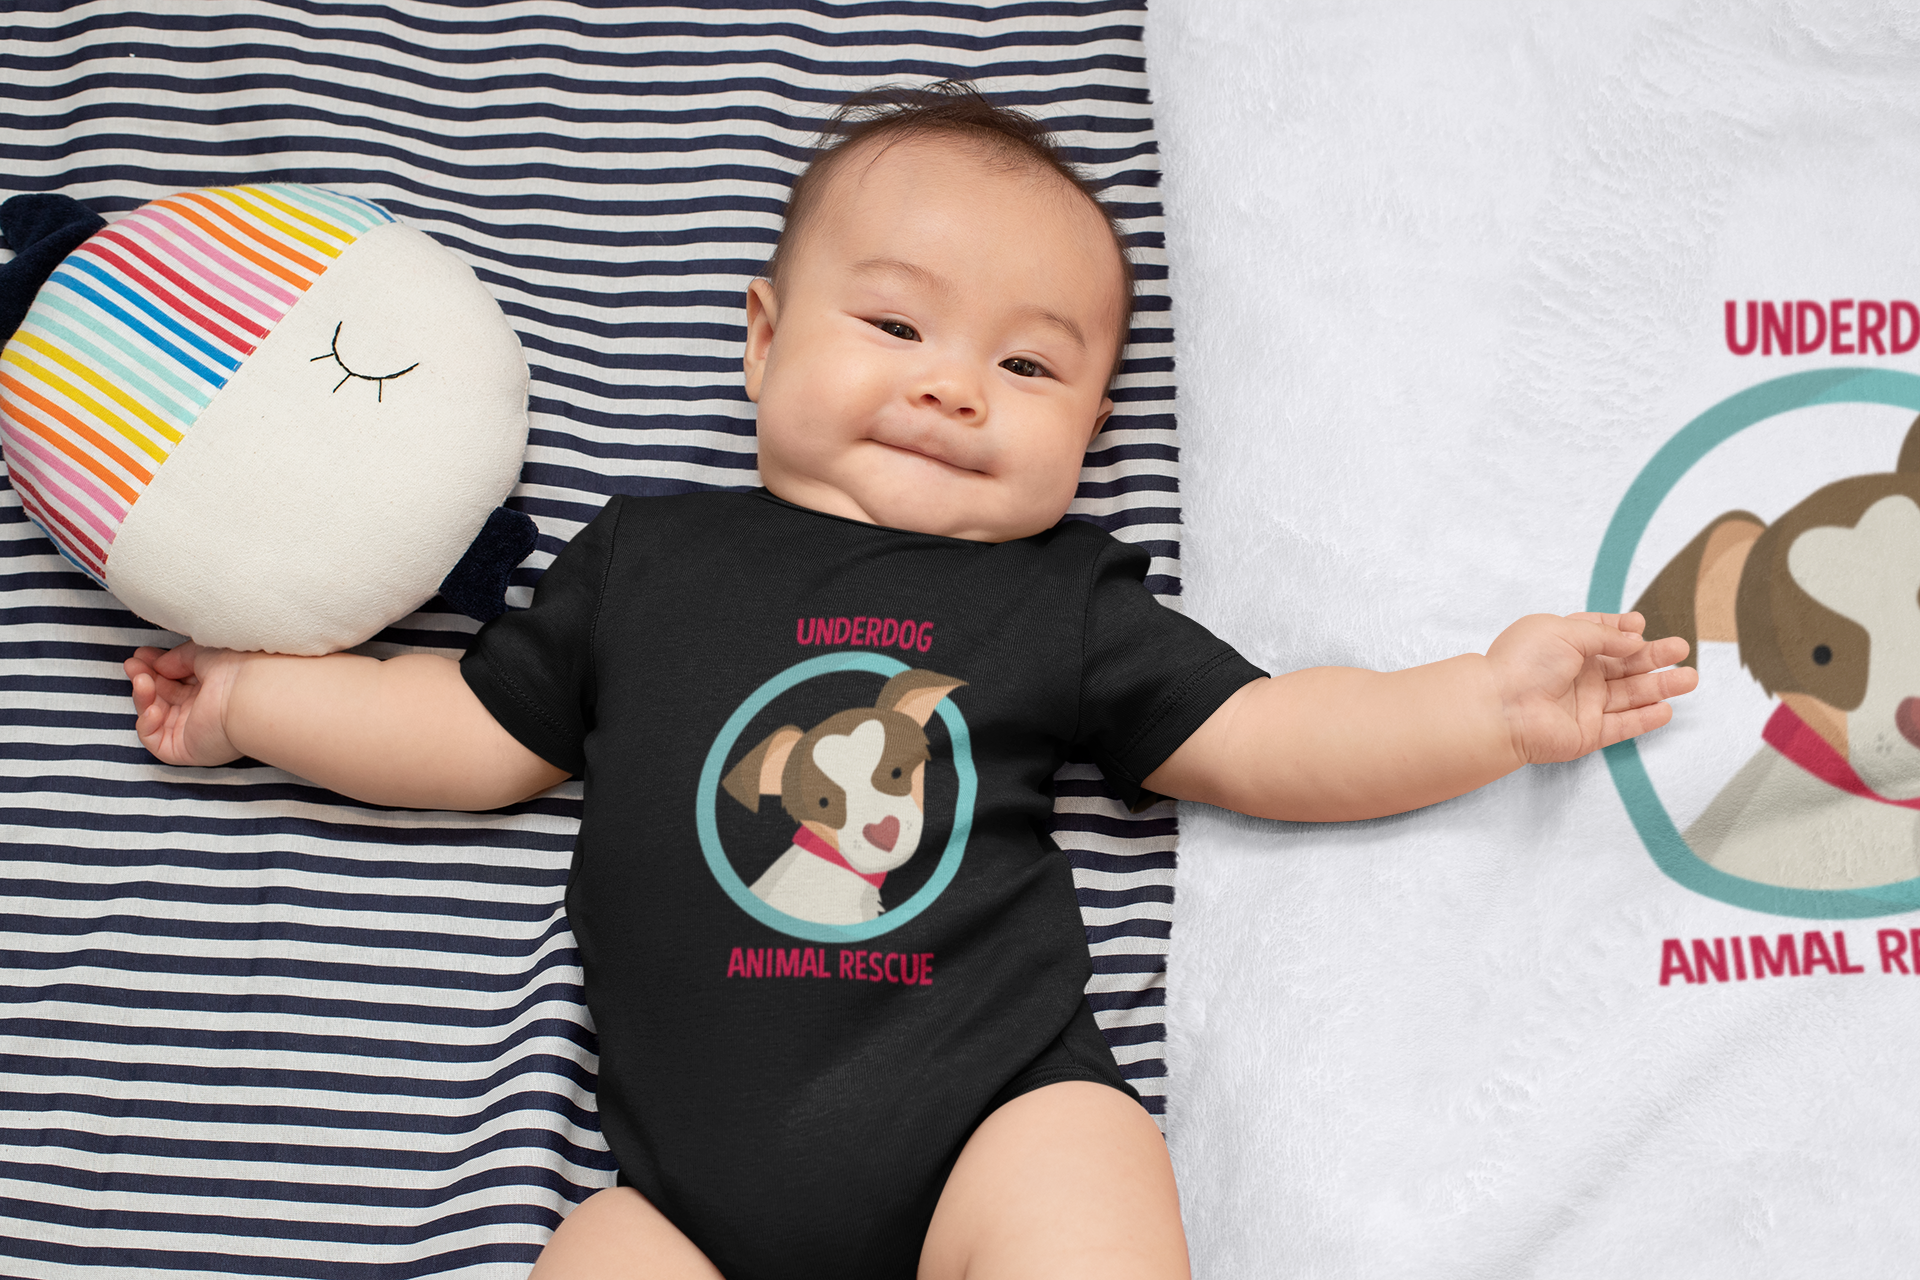 Underdog Baby Onsie - Ruff Life Rescue Wear